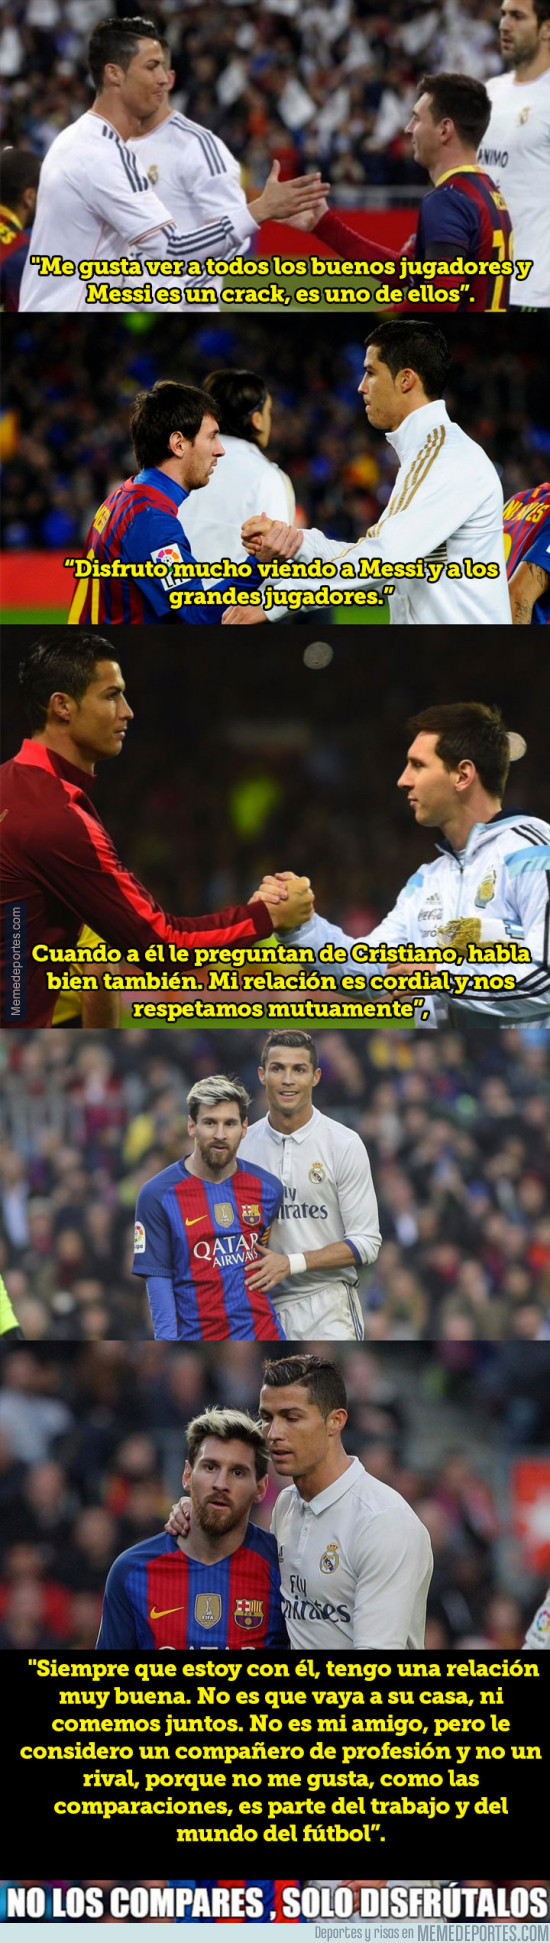 979130 - Cristiano Ronaldo se sincera y da su opinión sobre Messi